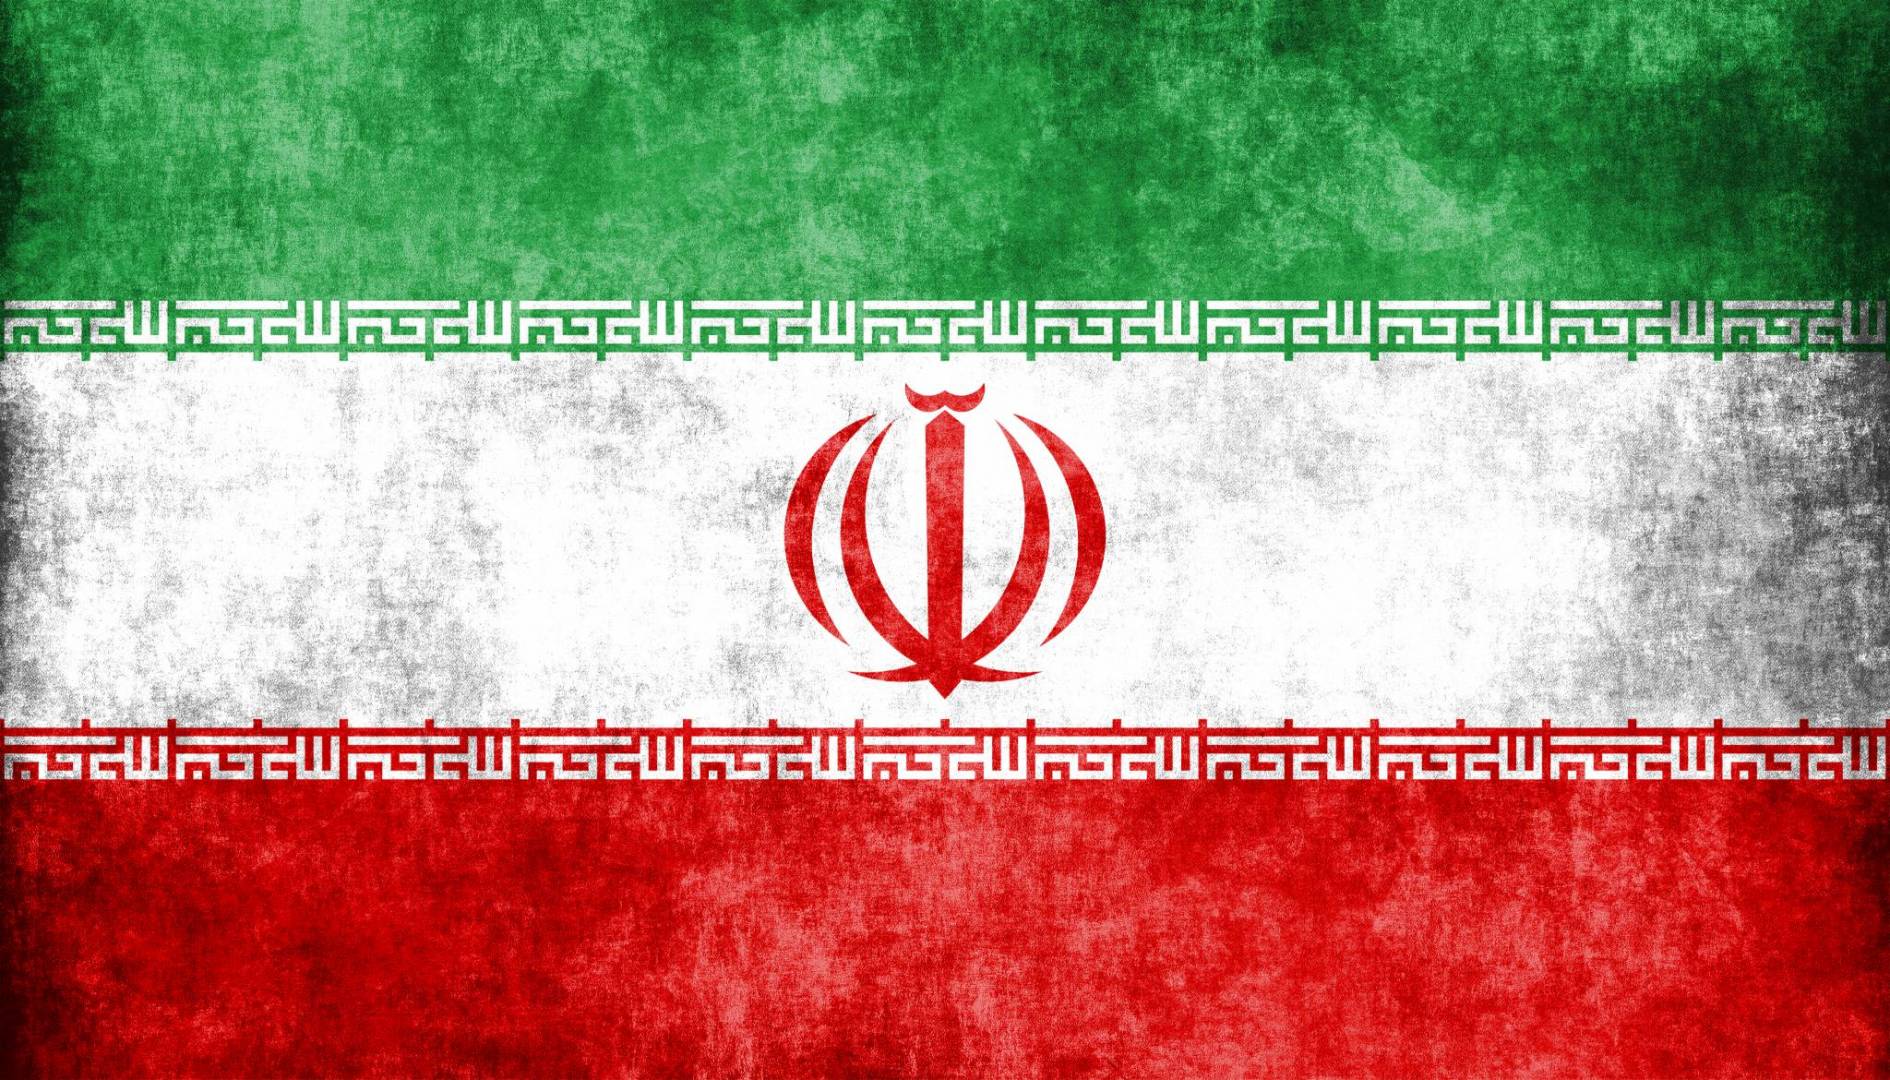 إيران: رفع حالة التأهب في المنشآت الاستراتيجية.. حتى المستوى البرتقالي العالي  